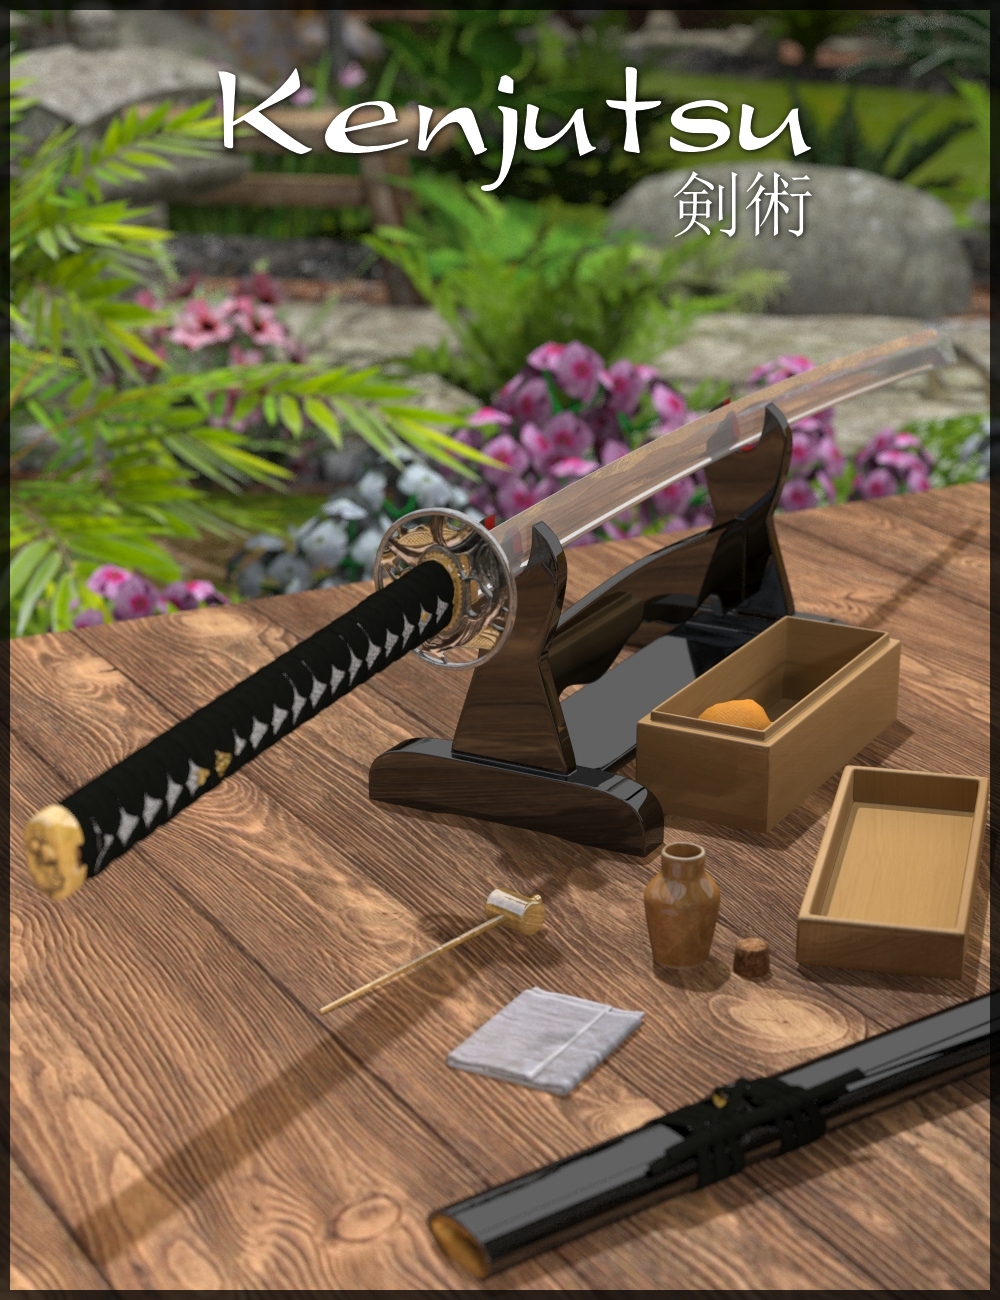 Kenjutsu Sword by: Merlin Studios, 3D Models by Daz 3D